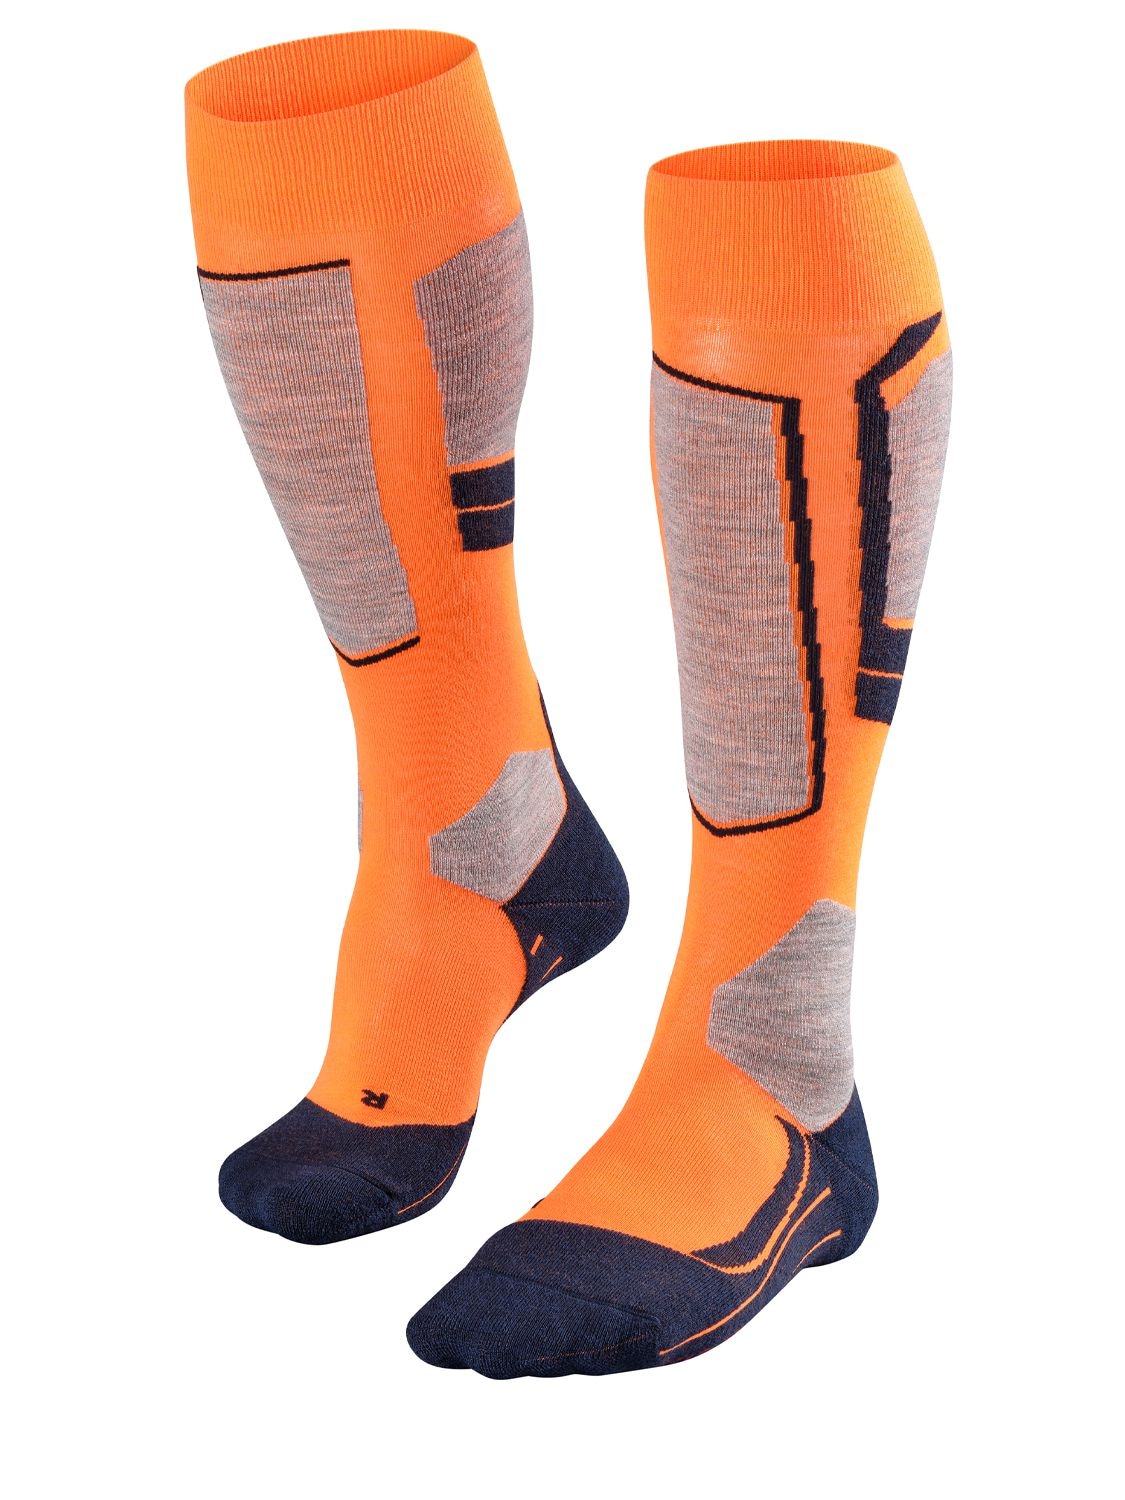 Falke Sk4 Techno Ski Socks In Orange